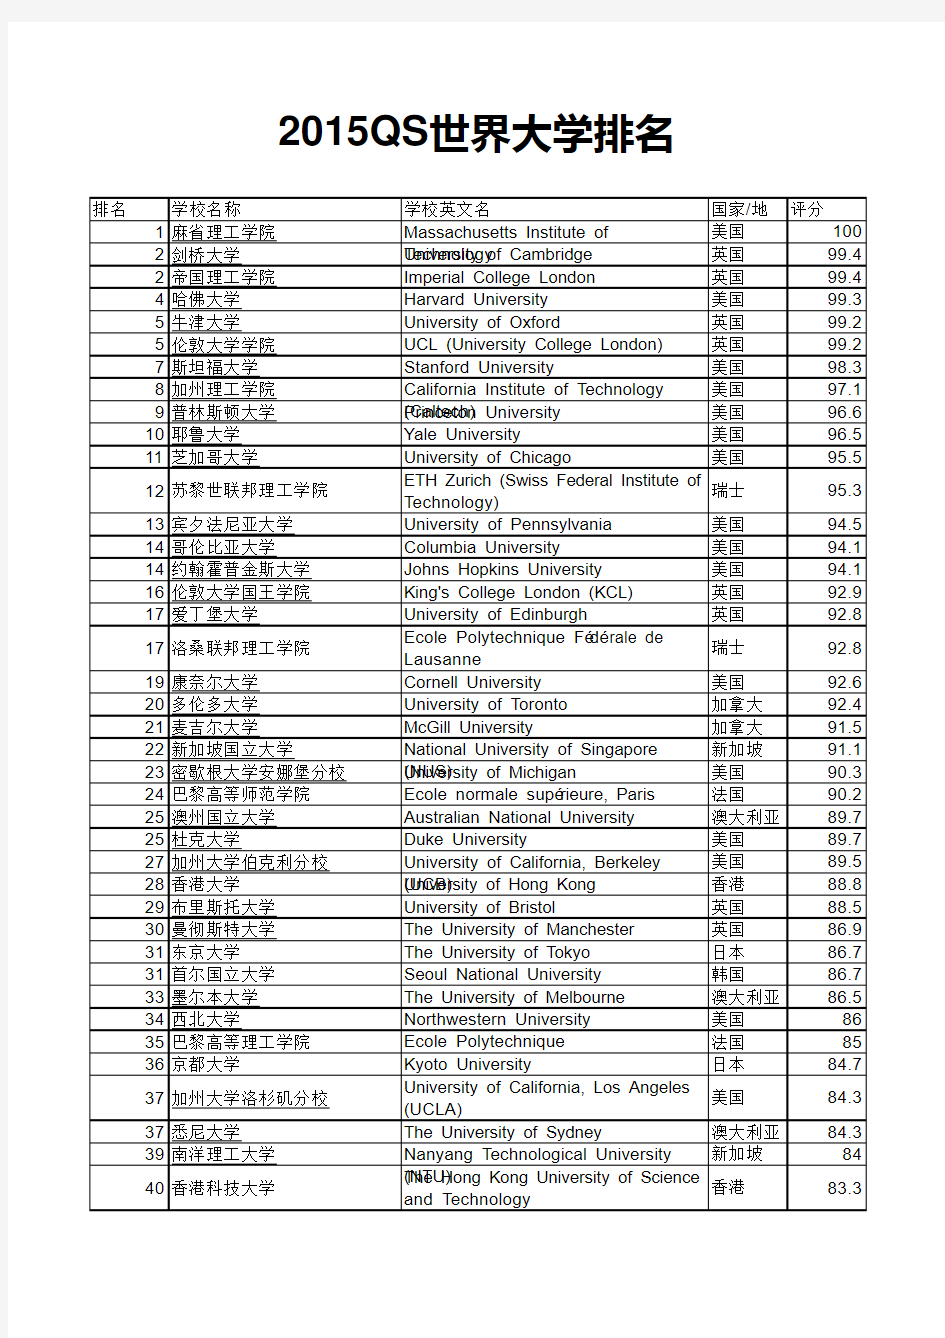 2015年QS世界大学排名榜Top200